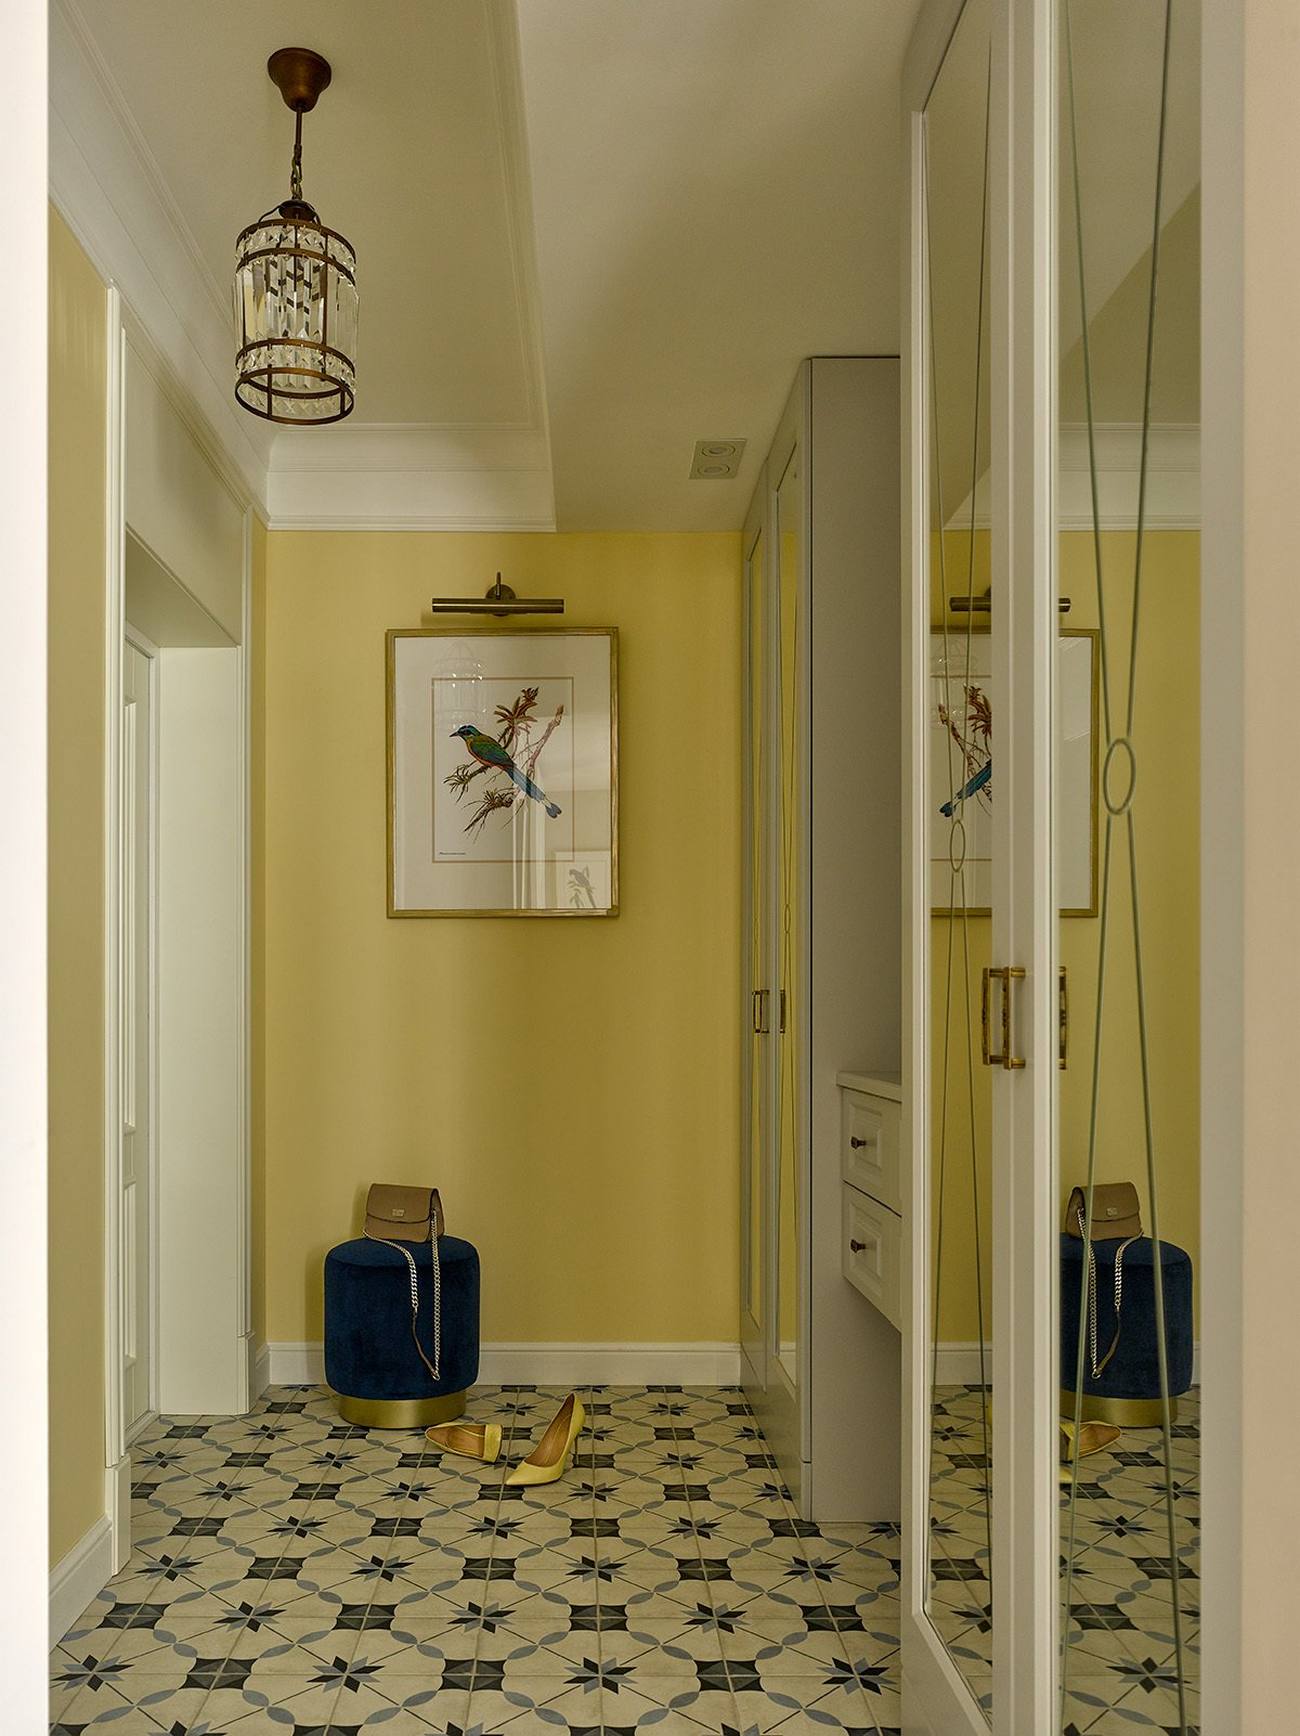 Lối vào căn hộ tràn đầy năng lượng với gam màu vàng trẻ trung của màu sơn tường, phối hợp với sàn nhà lát gạch bông hoa văn cổ điển. Chiếc đèn thả trần ấn tượng cùng bức tranh chú chim nhỏ cho không gian bắt mắt hơn.